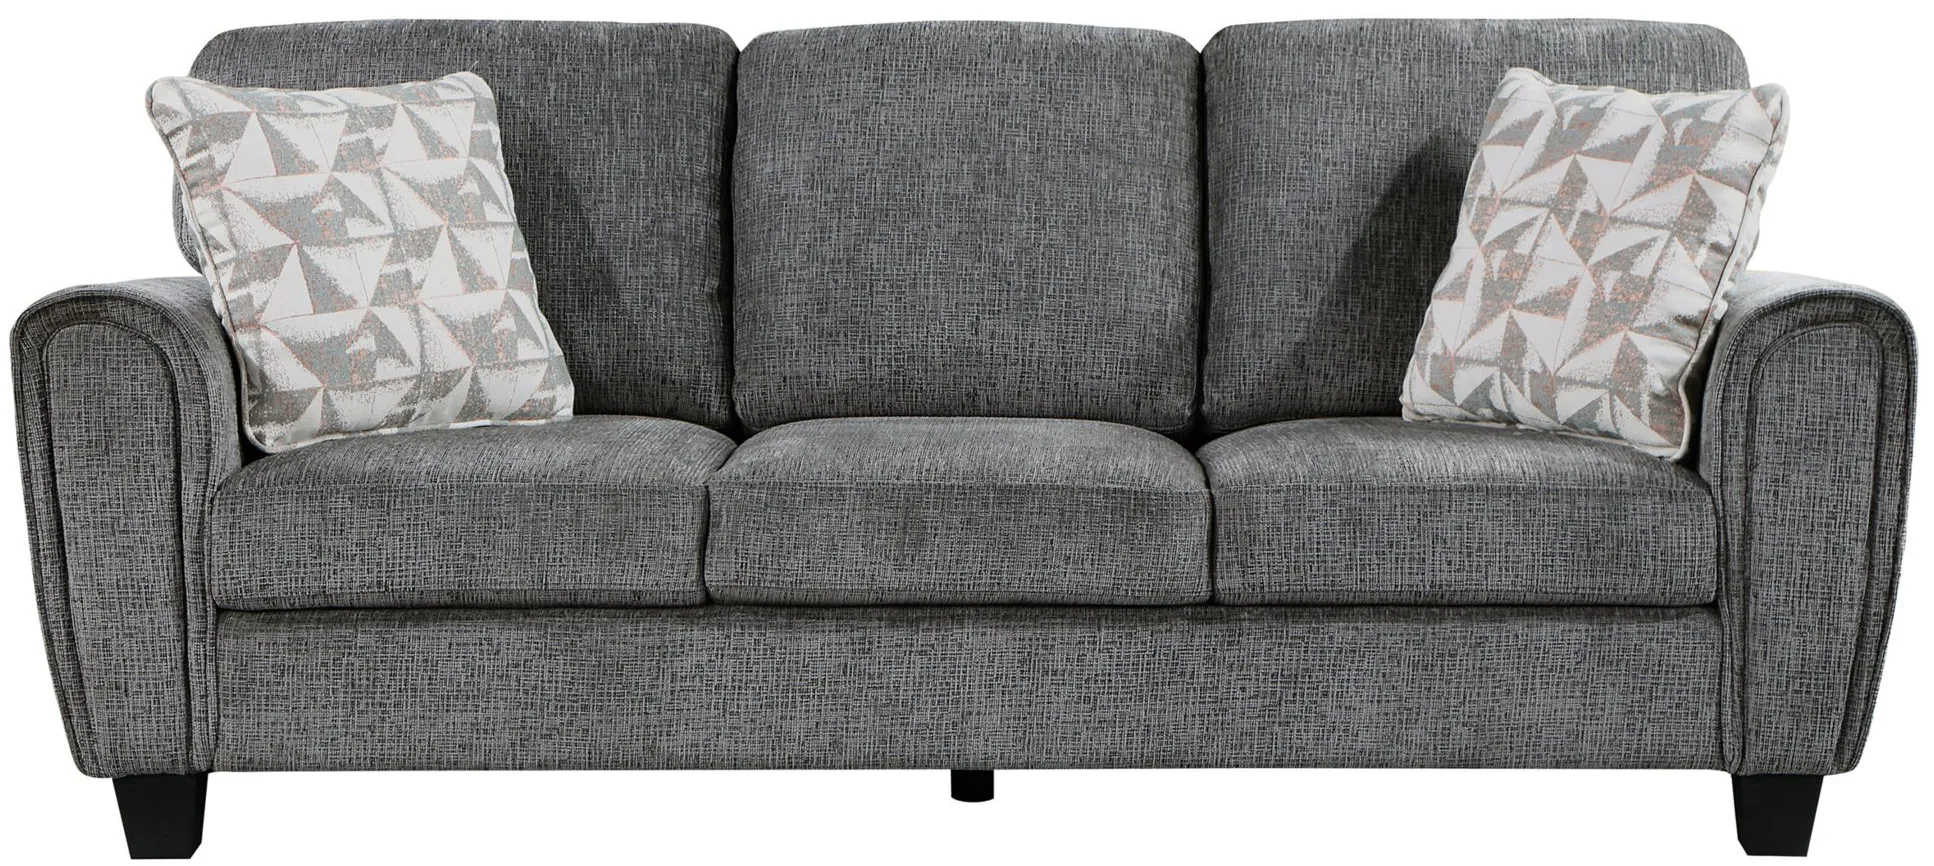 Tabor Sofa in Dark Gray by Homelegance